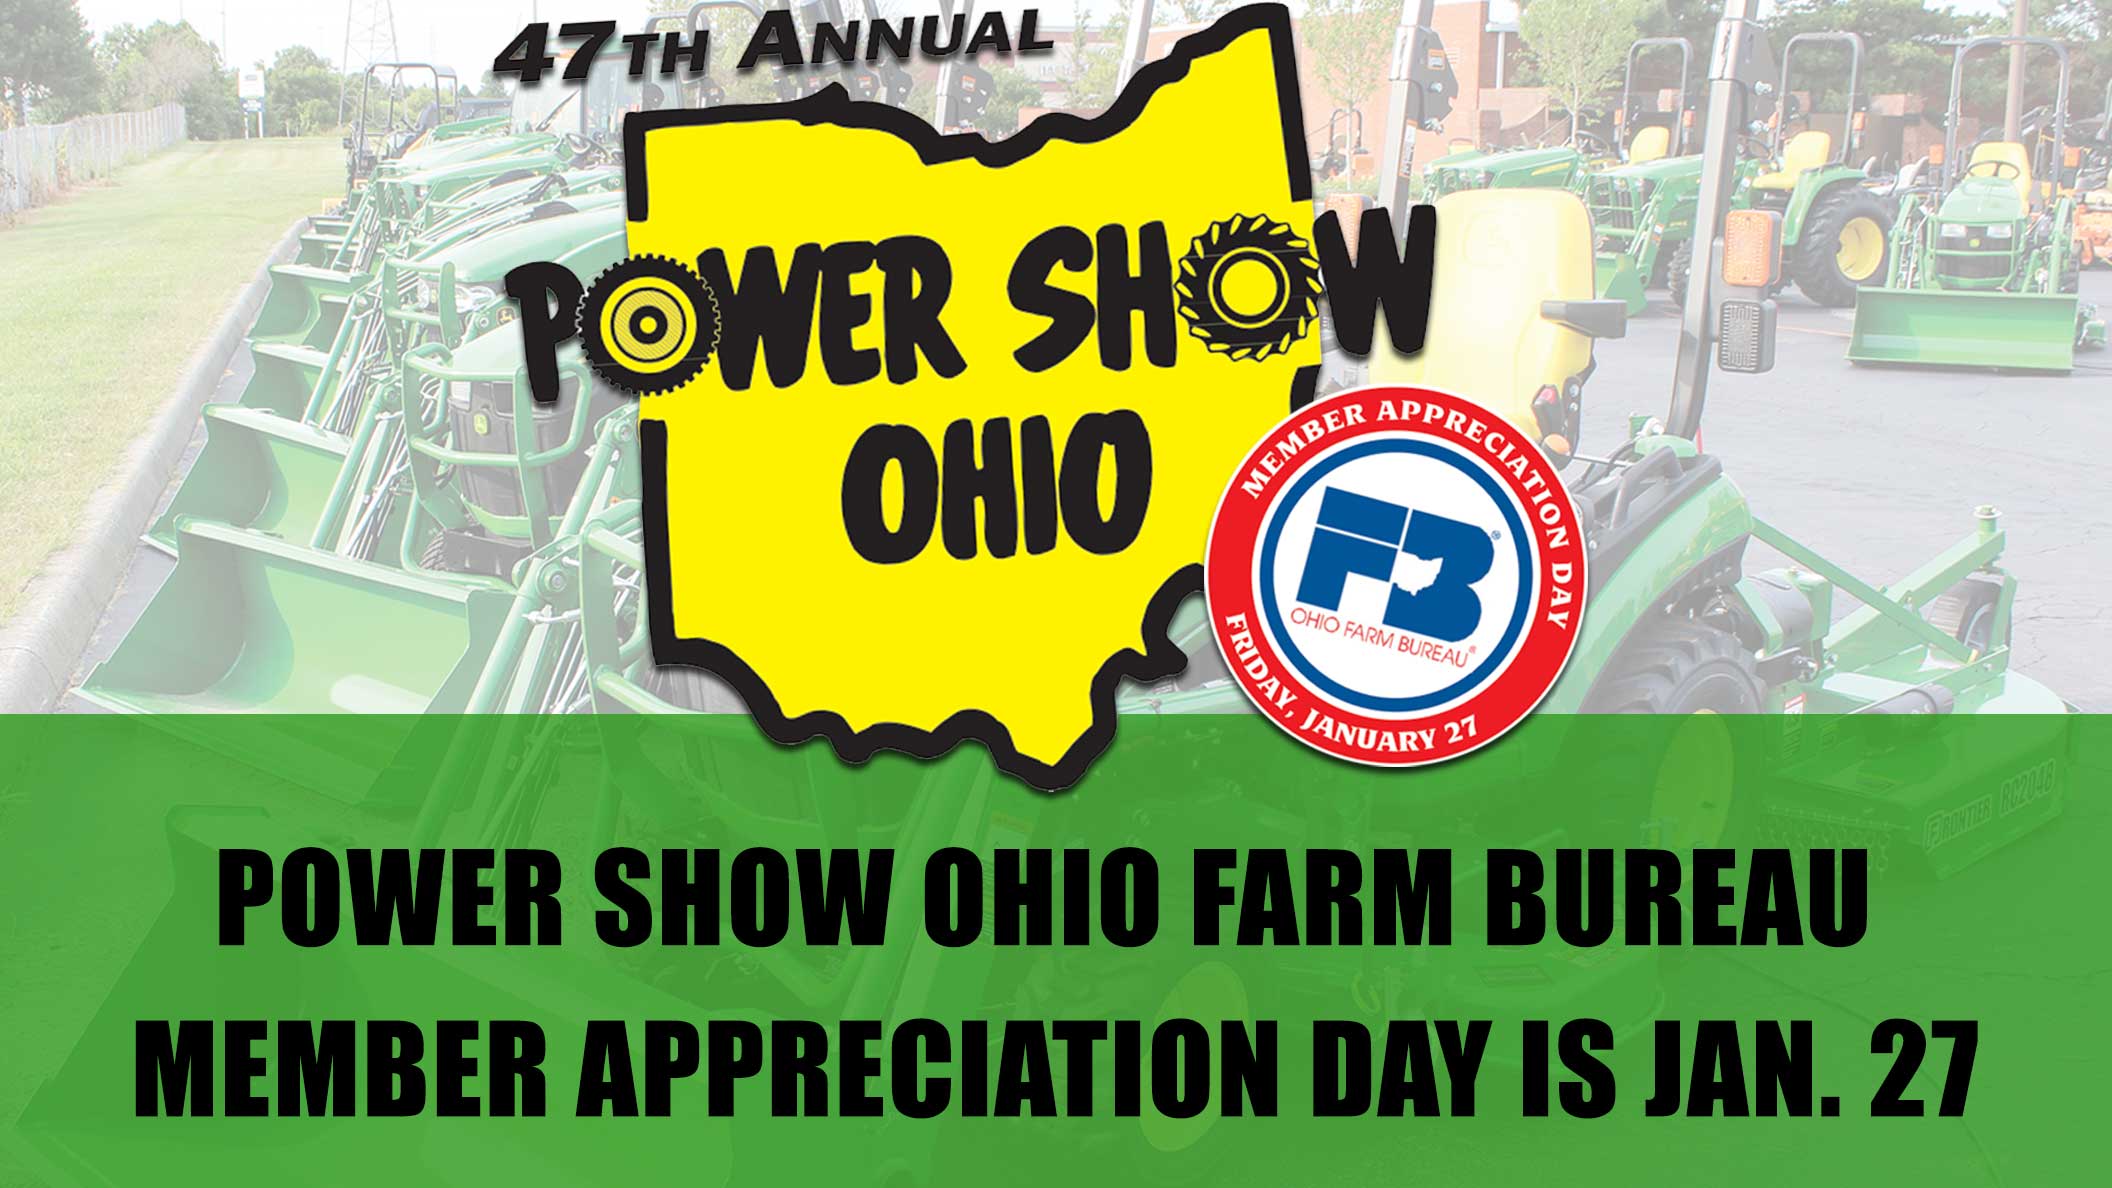 Visit Farm Bureau at Power Show Ohio Ohio Farm Bureau